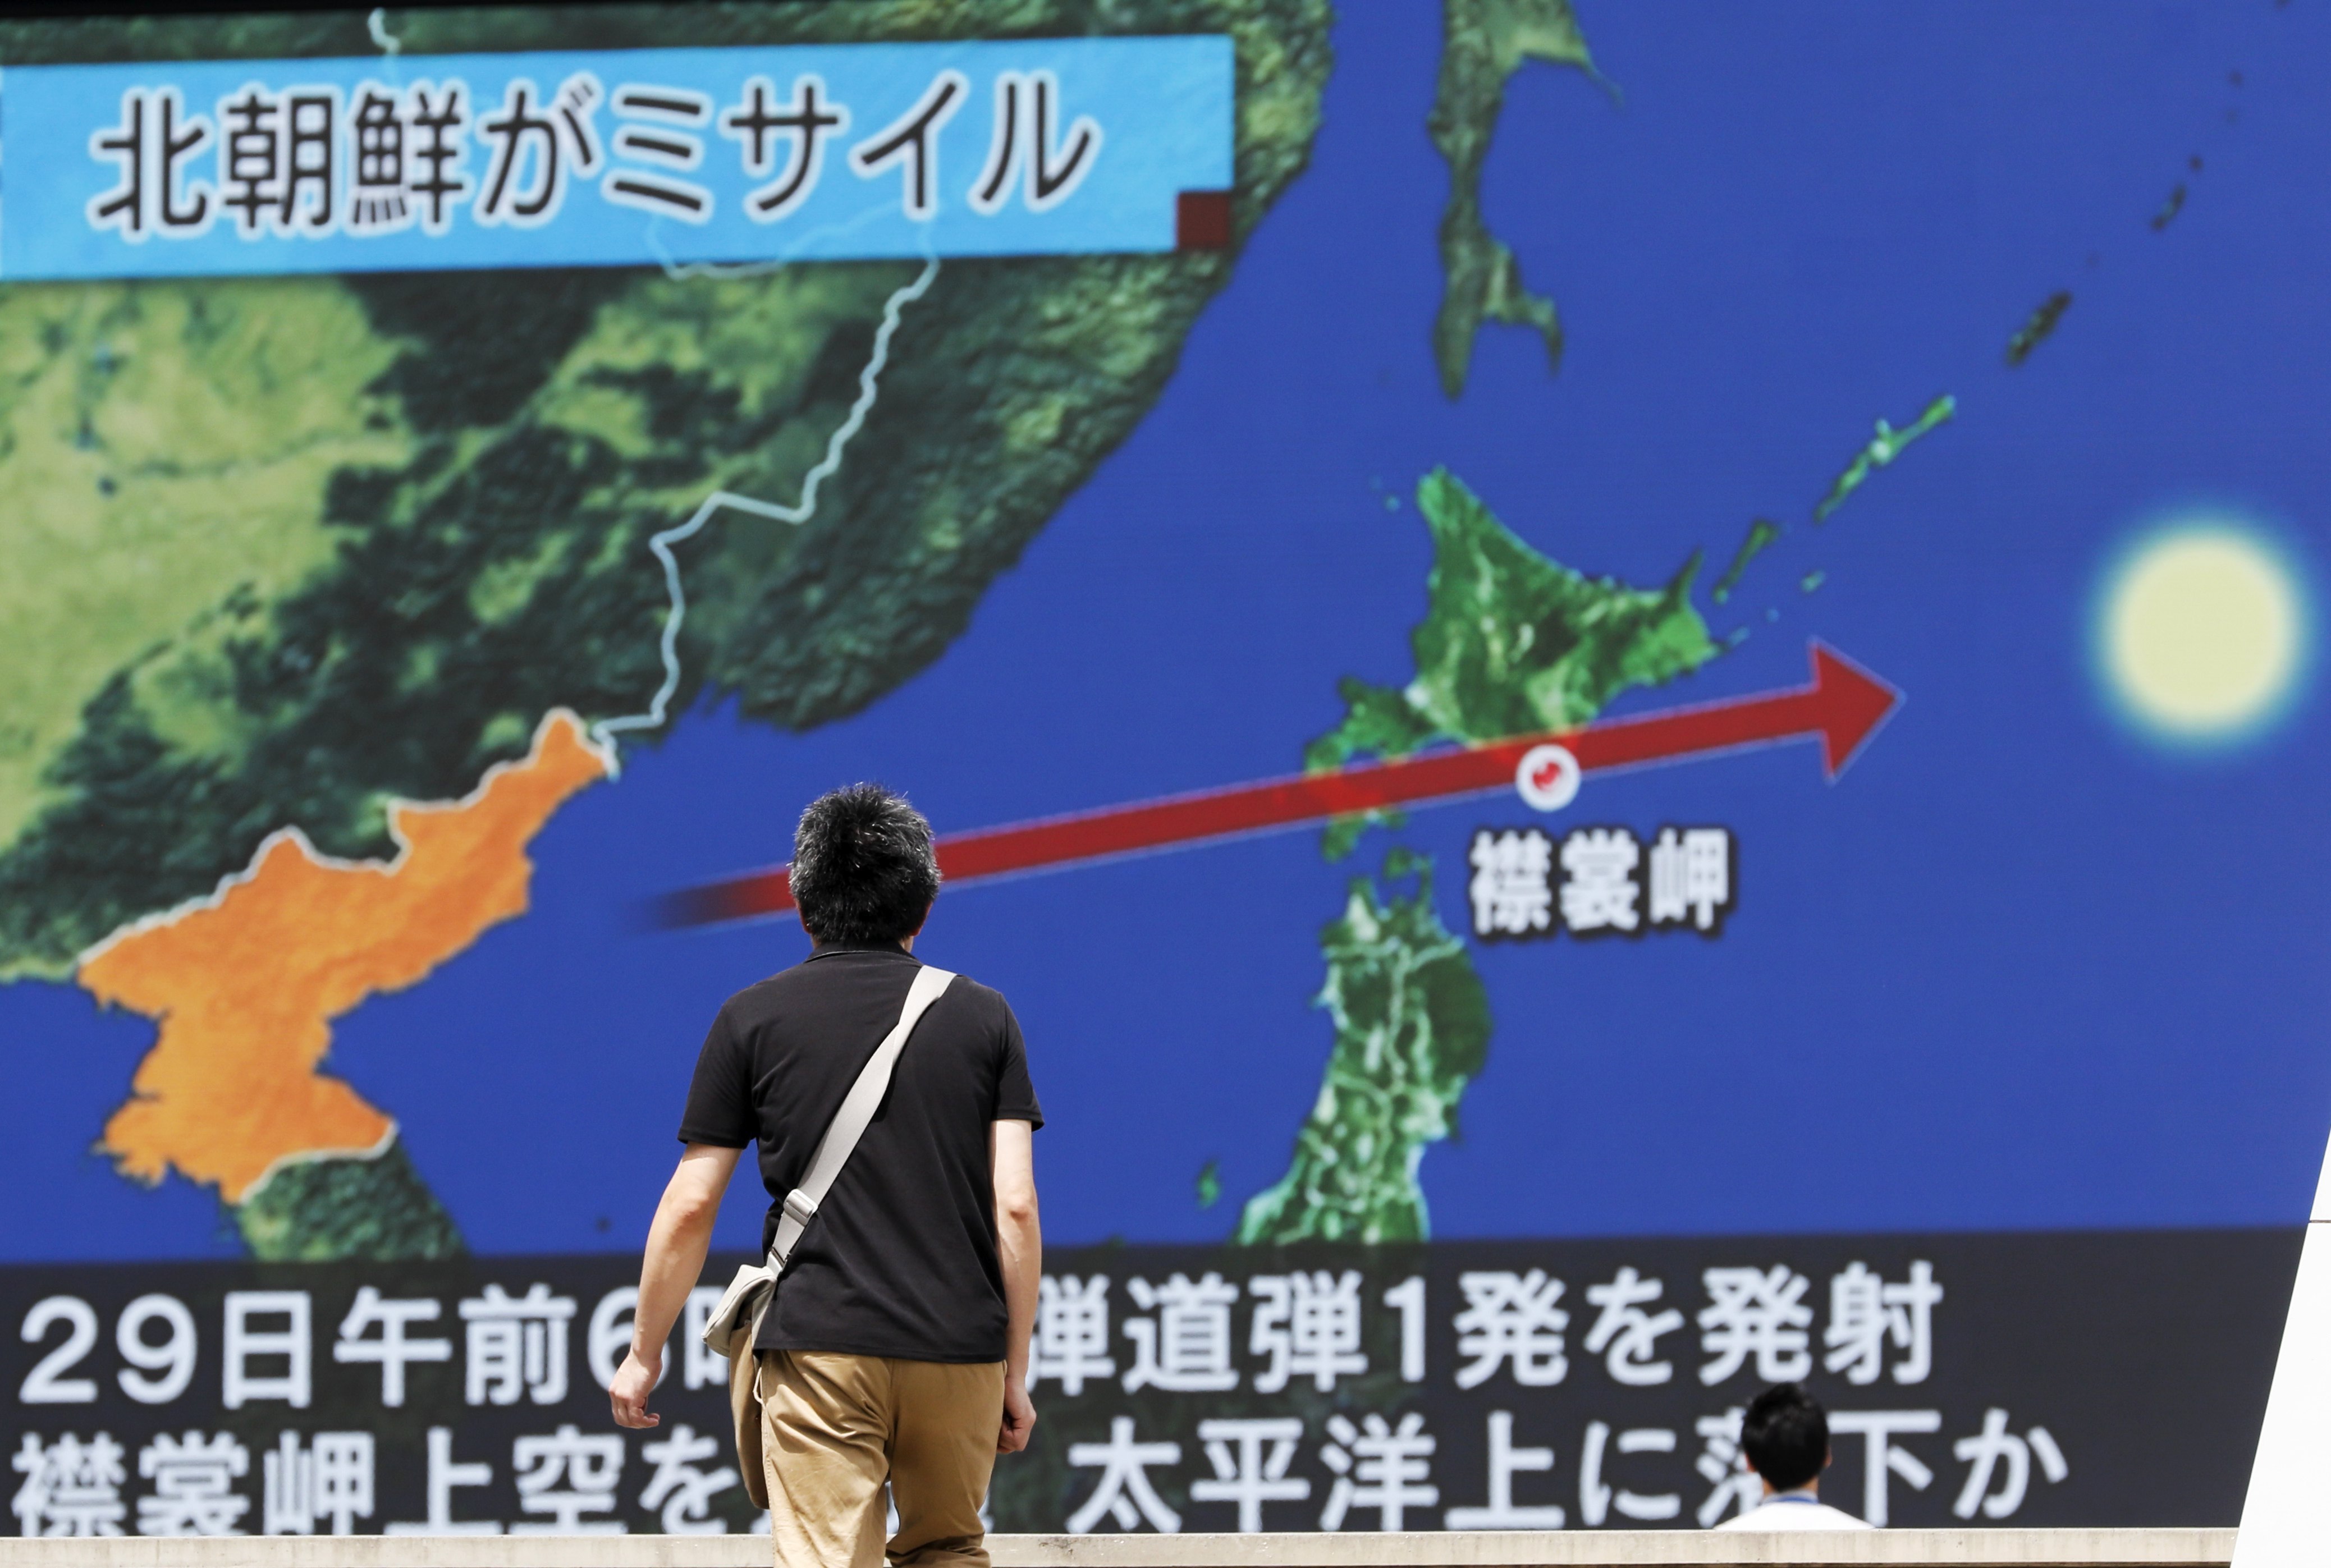 Así sonaron las sirenas antiaéreas en Japón tras lanzamiento de misil balístico desde Corea del Norte (Video)